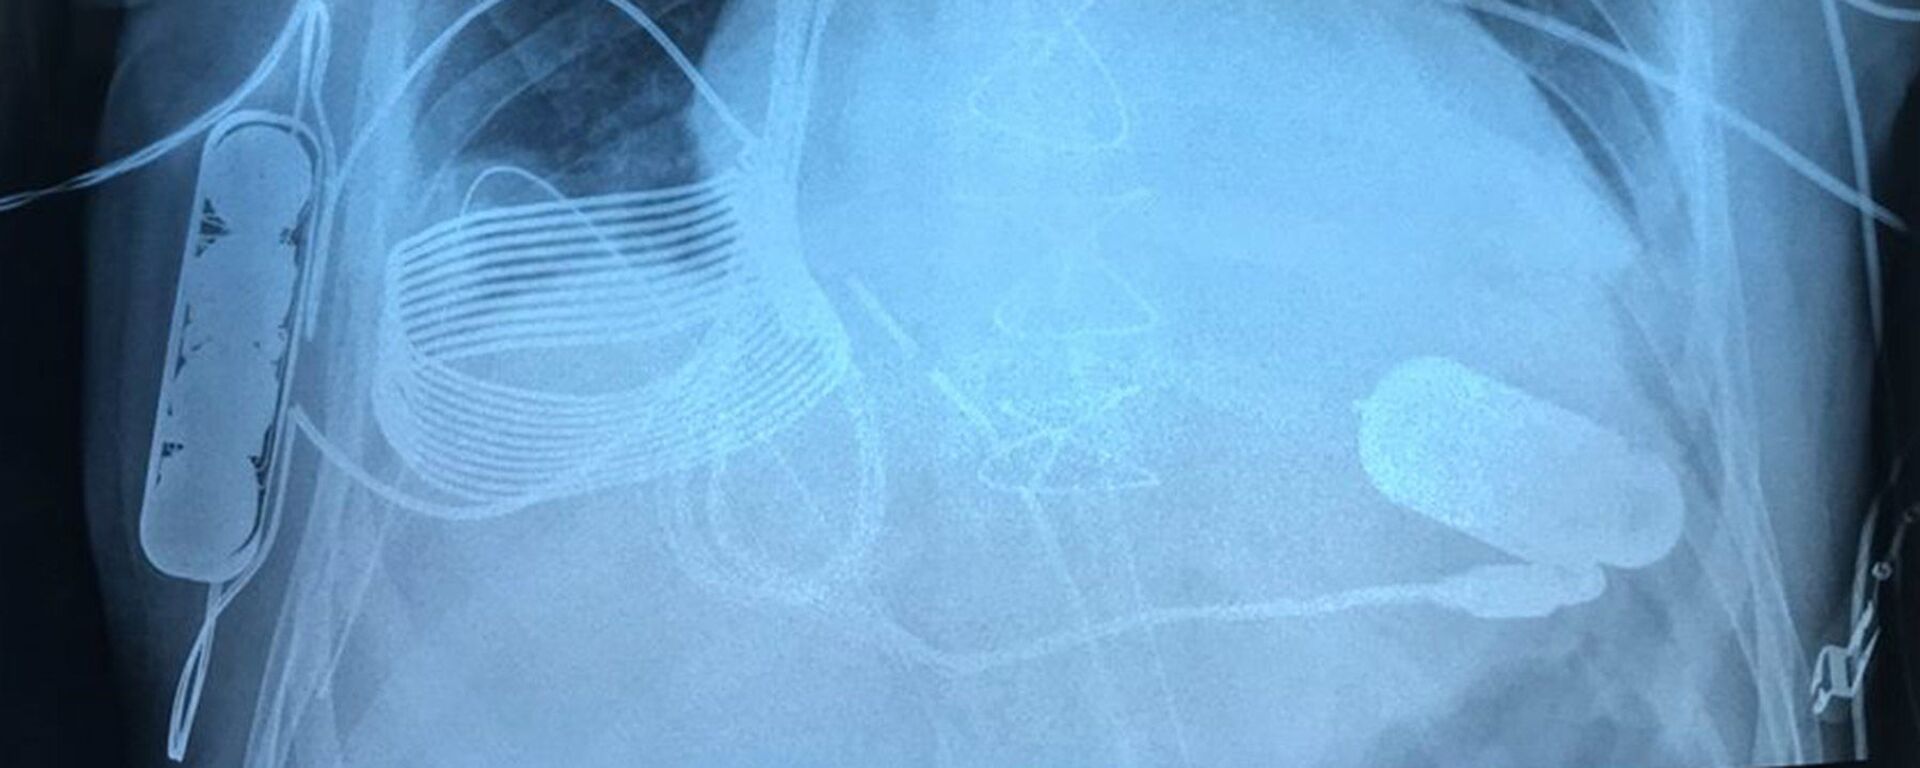 末期の心不全患者に「無線充電式」人工心臓が移植される - Sputnik 日本, 1920, 22.07.2021